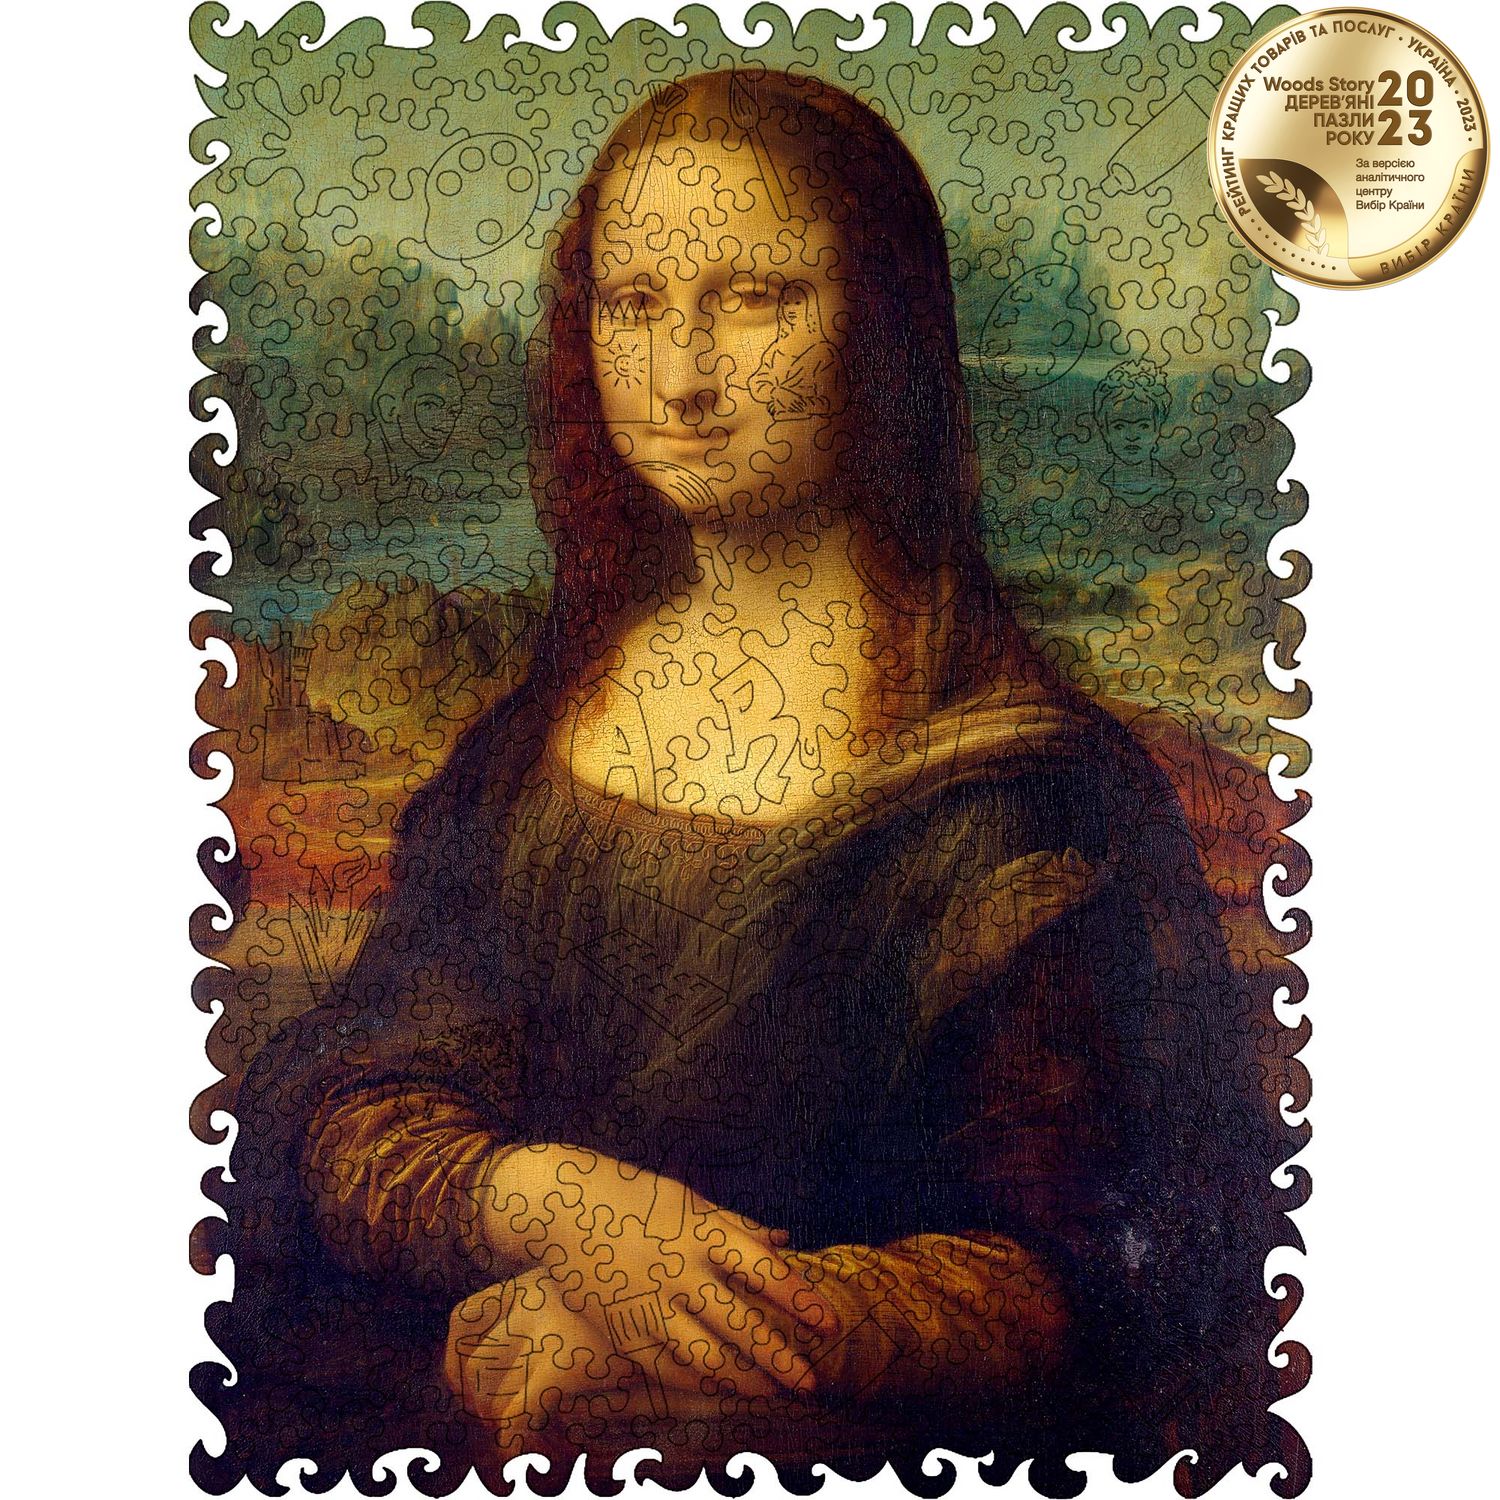 Деревянный пазл Мона Лиза (Леонардо да Винчи) L